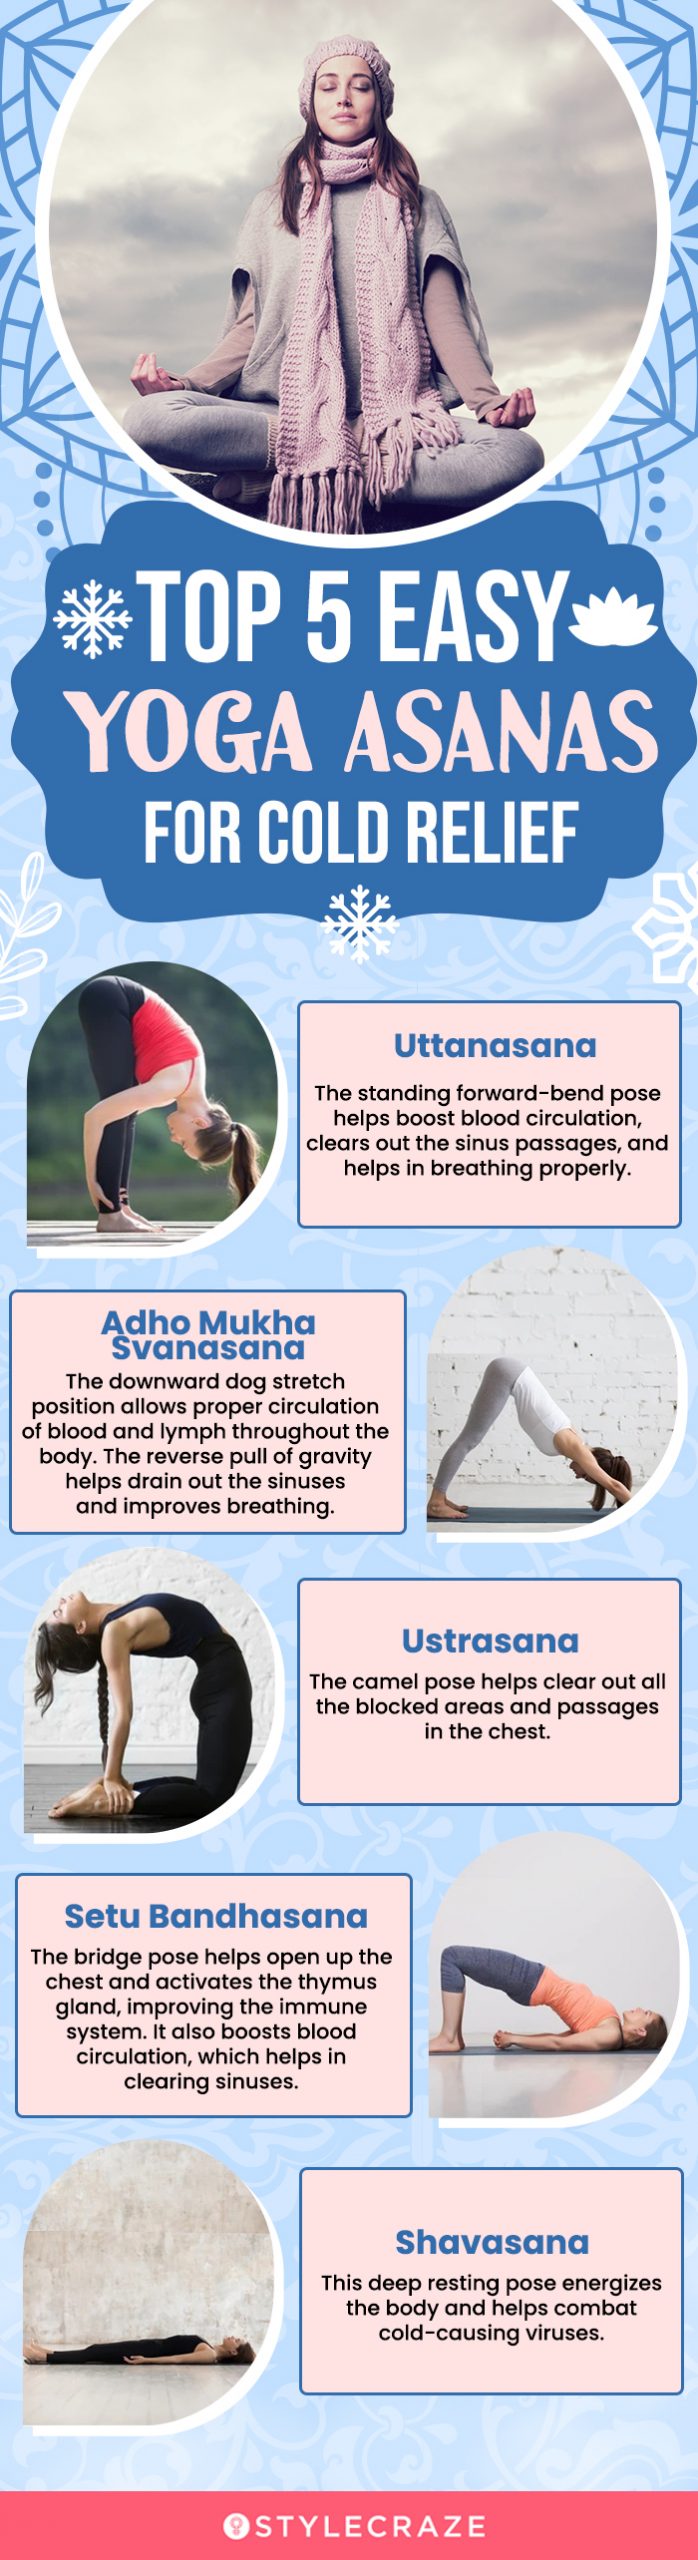 Aao twist karein! Modern adaptations of yoga | Health - Hindustan Times